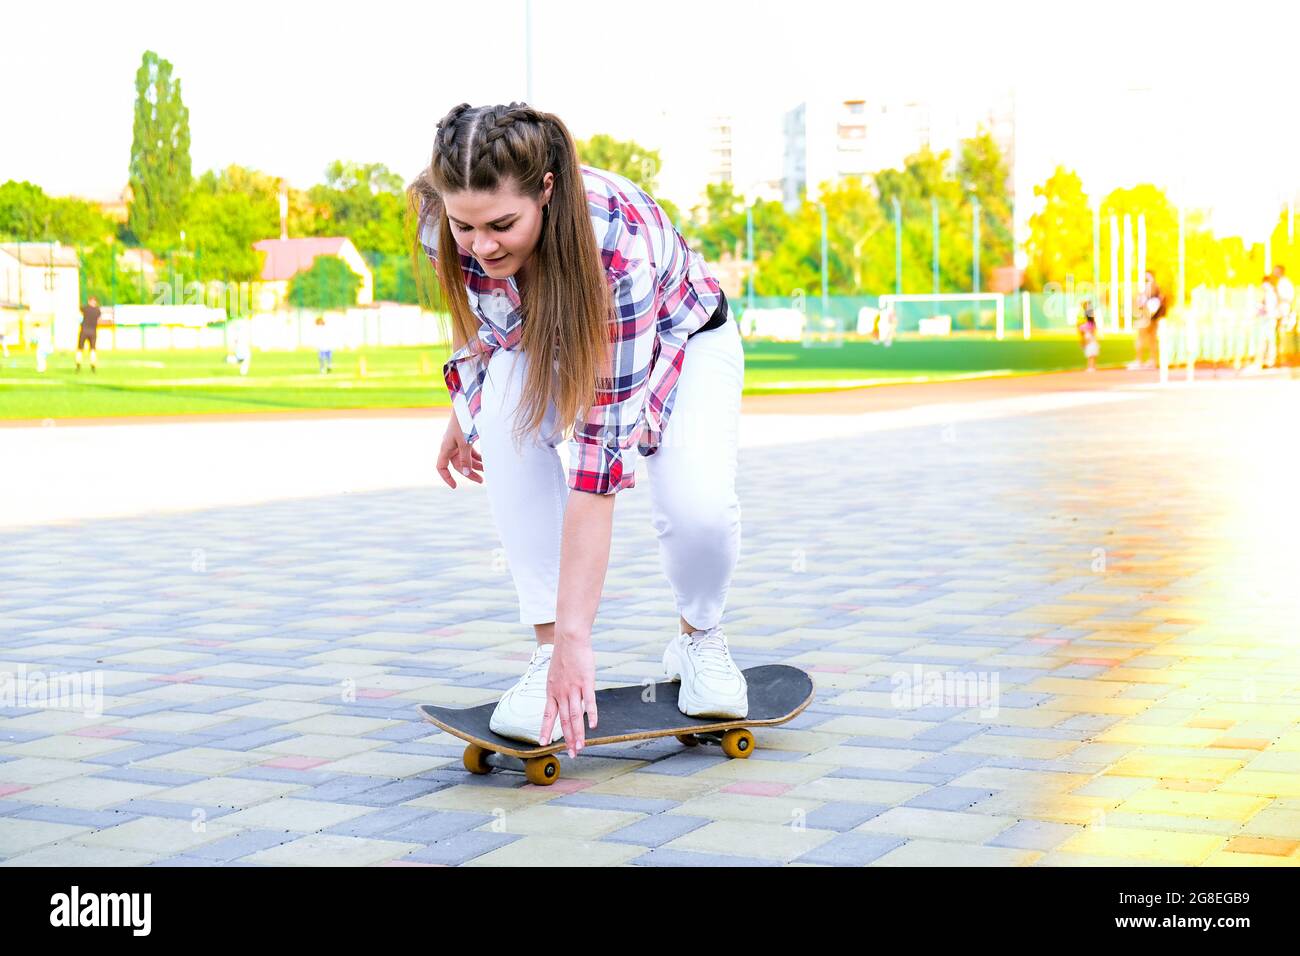 Junge Millennial Frau Hippie auf Skateboard sitzen. Summer Skate Sessions.  Sport Skateboarding. Frau, die auf einem Longboard in einem Park fährt.  Unbeschwerte Skaterin 20er Jahre genießen Freiheit Jugend Lebensstil.  Zurück zu normalen